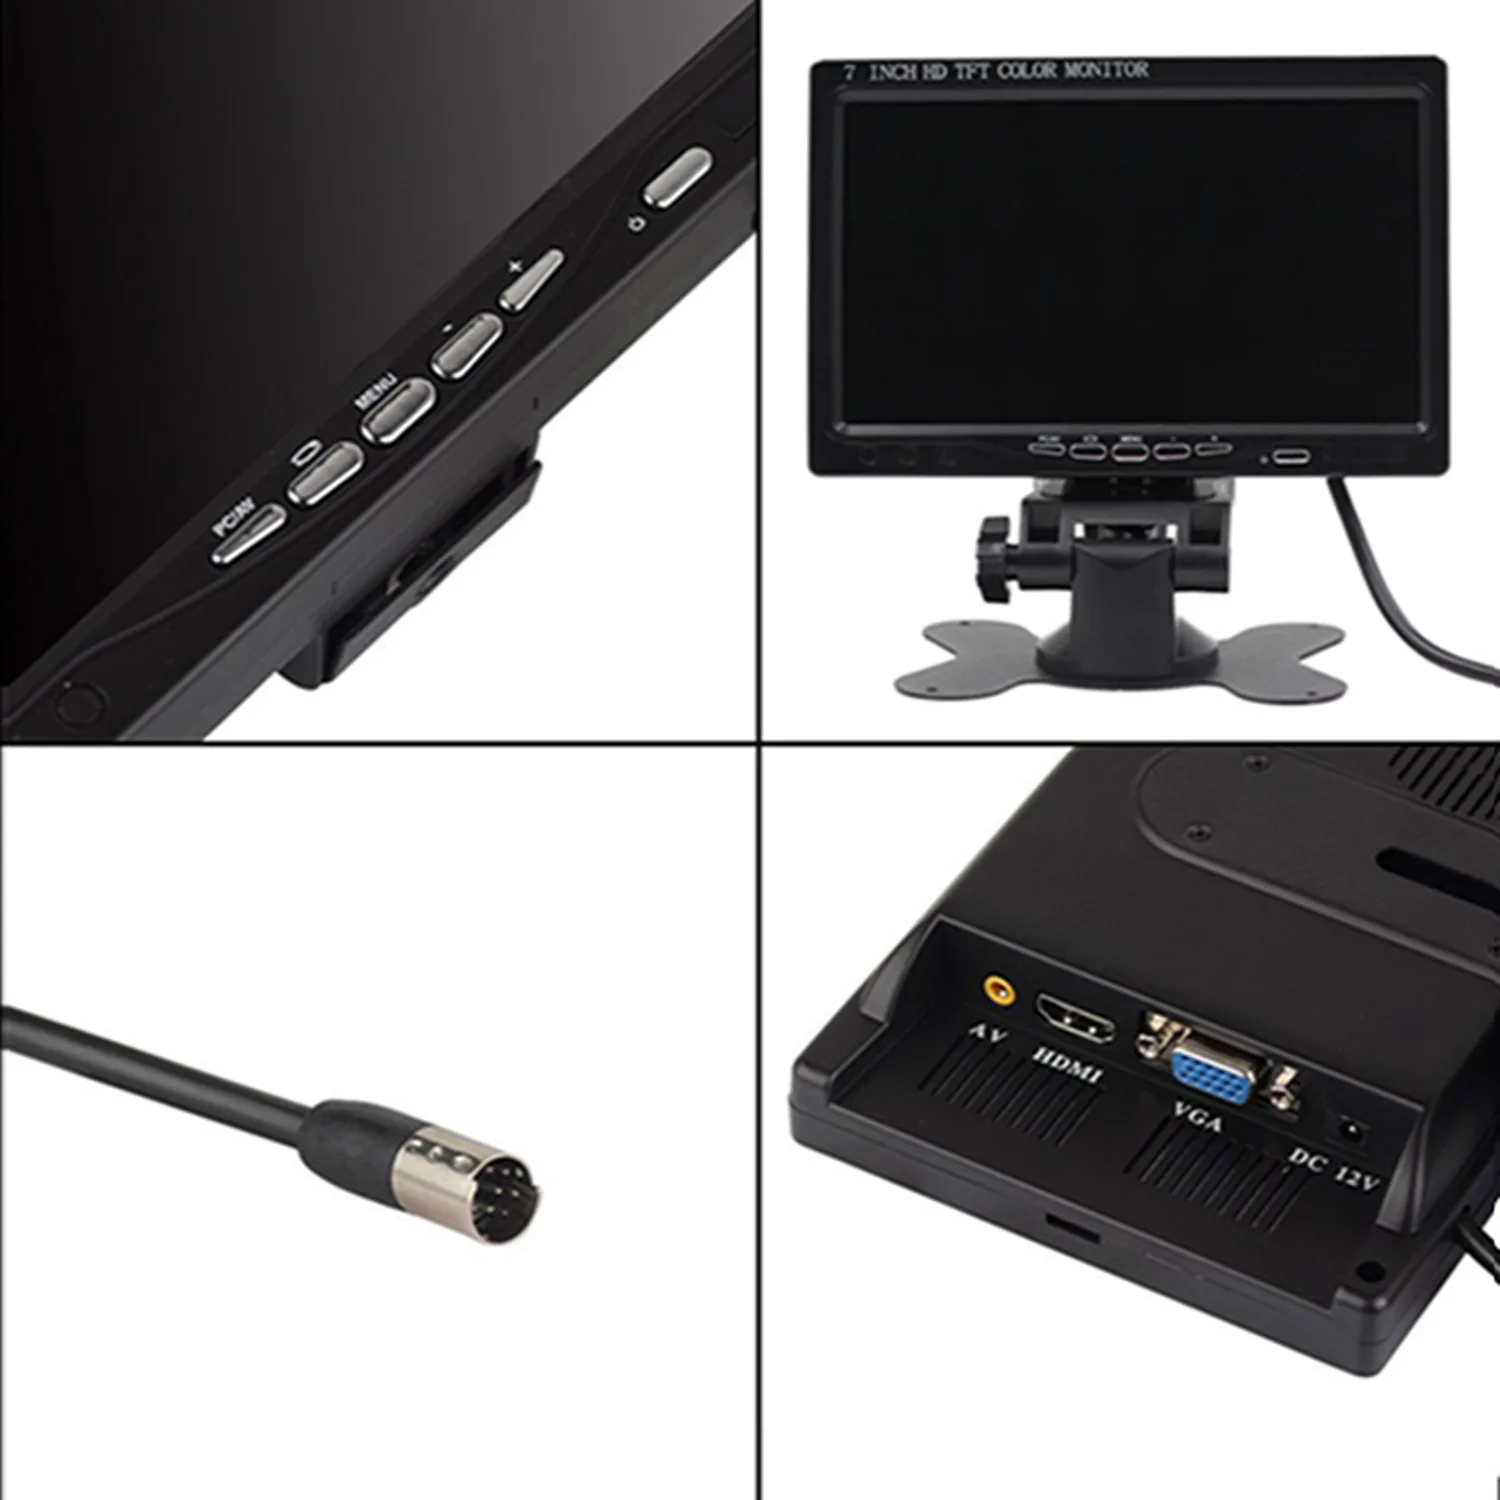 7 дюймов HDMI, VGA, AV ЖК-дисплей Экран дисплея для Raspberry Pi SLR Камера 5 V 24 V 1024*600 Автомобильное зеркало заднего вида для контроля уровня сахара в крови с Динамик